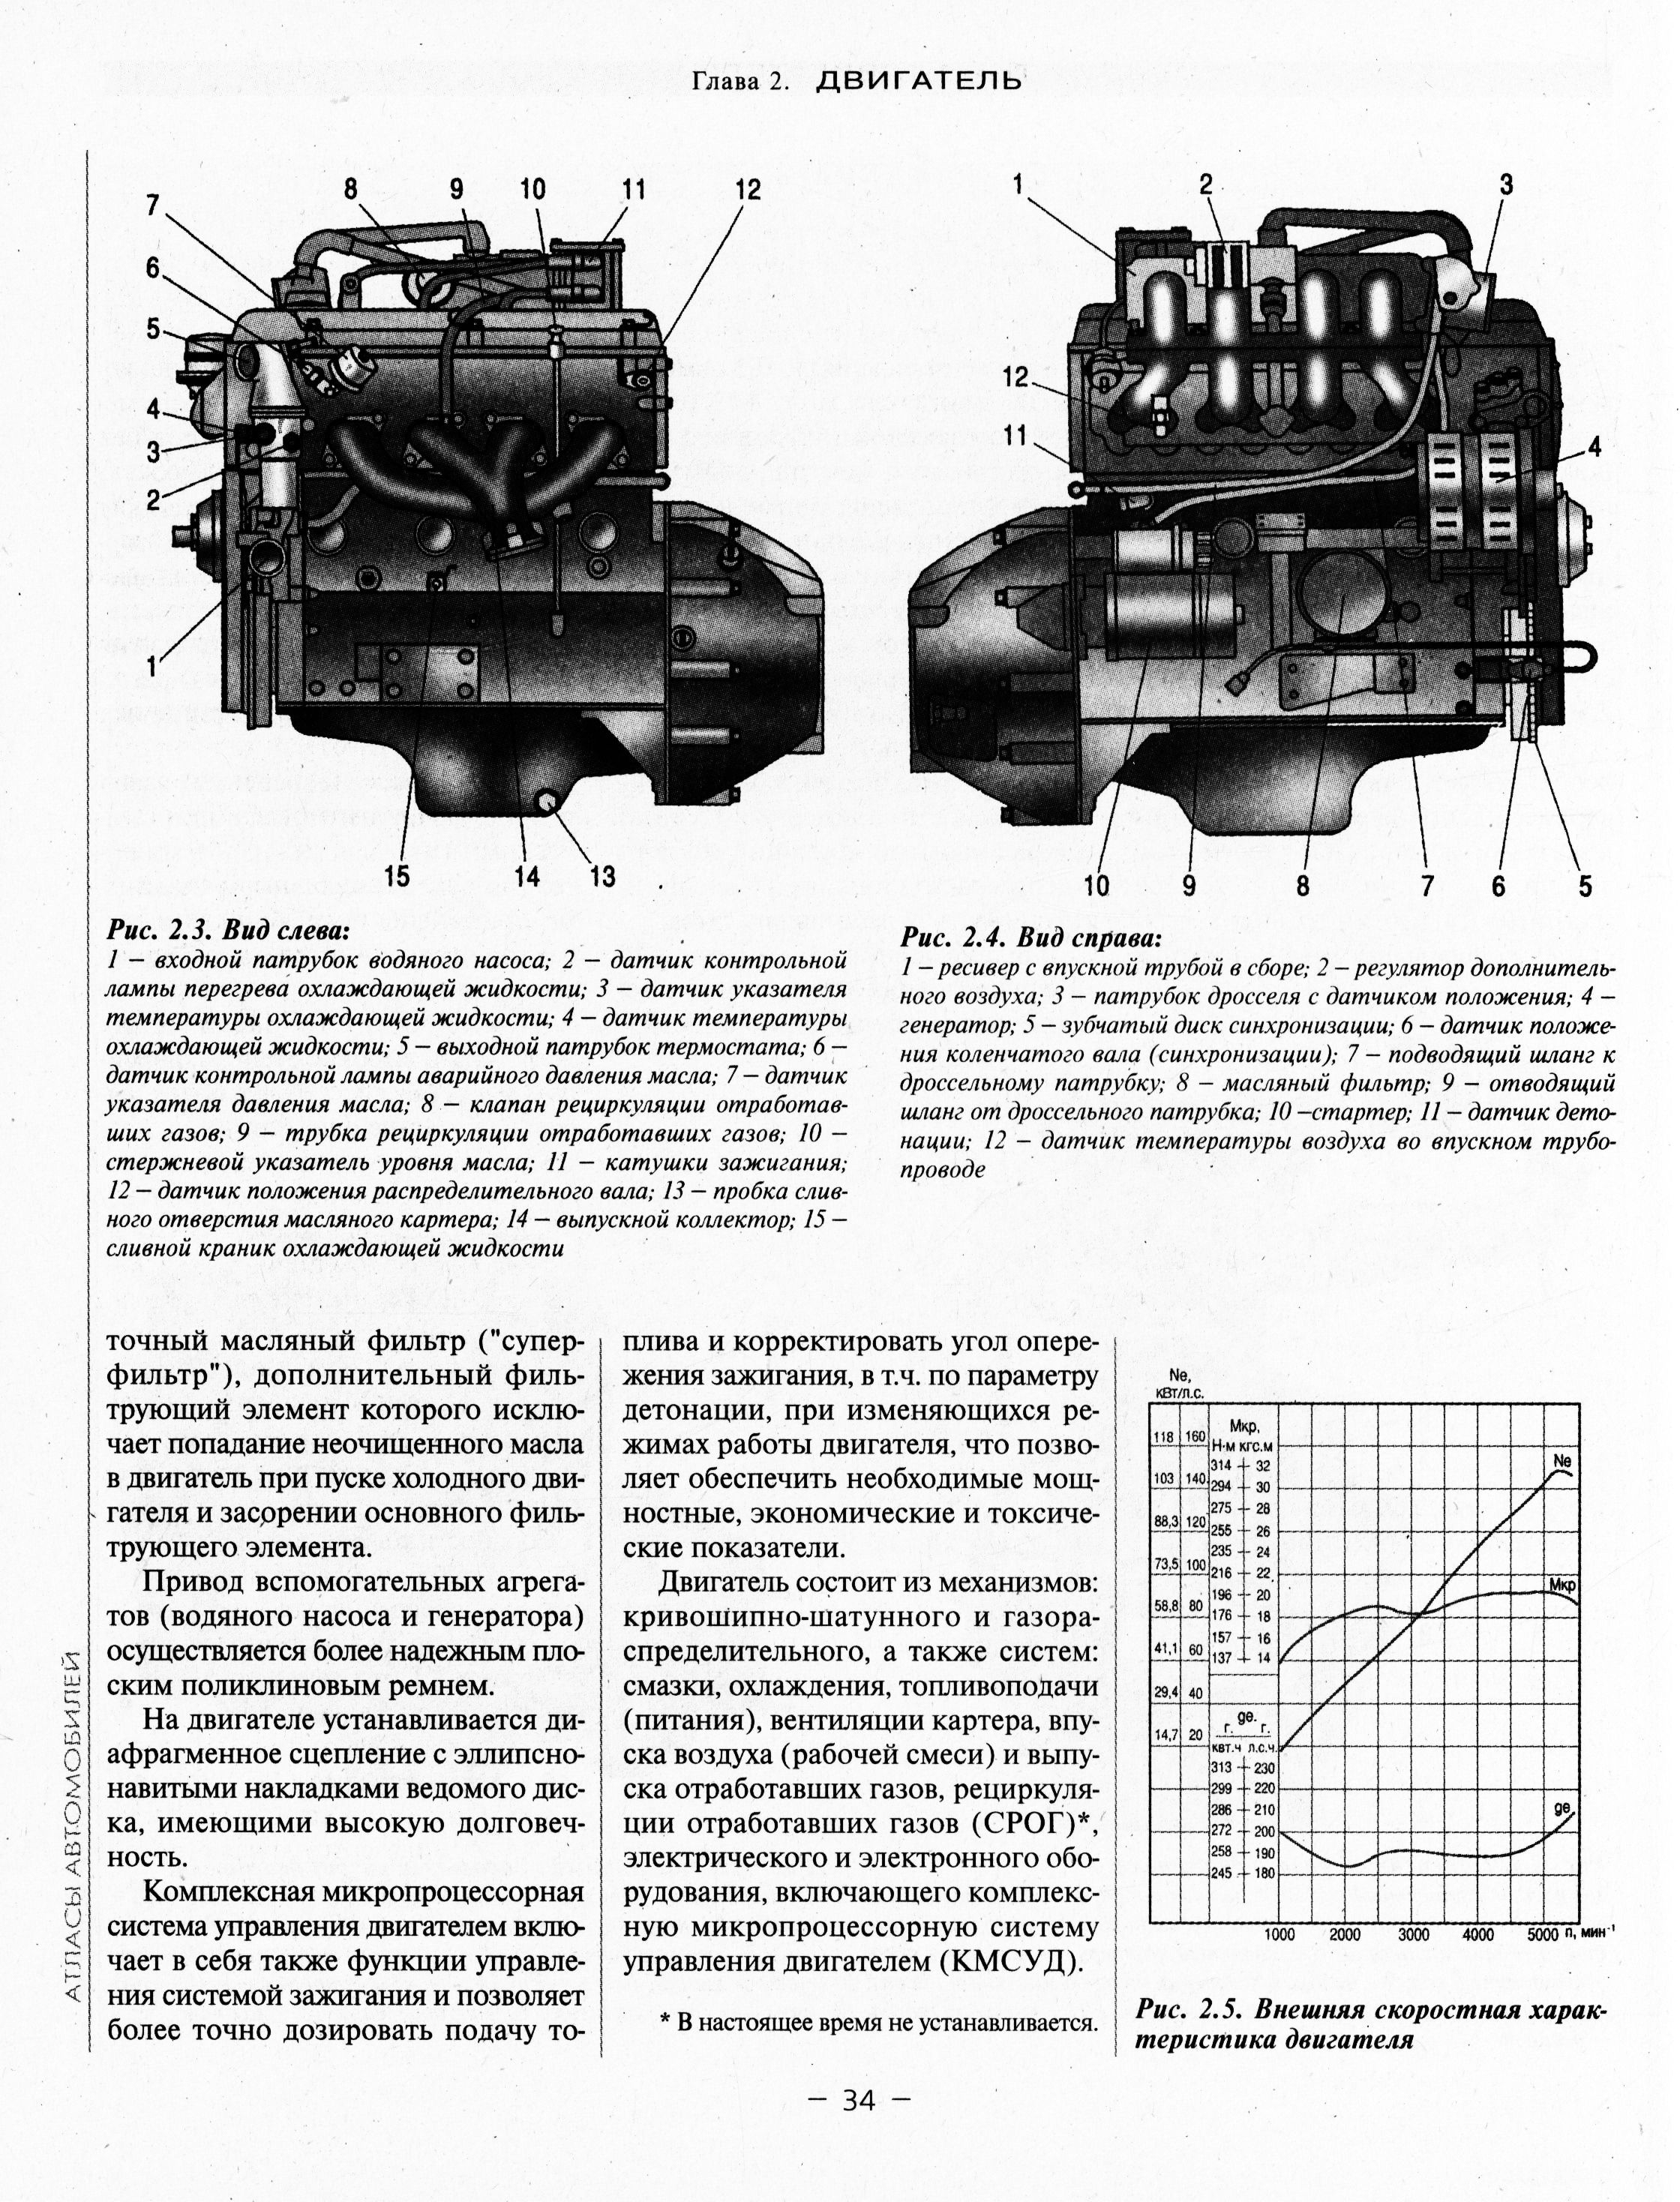 Книги и руководства по эксплуатации ГАЗ 3102